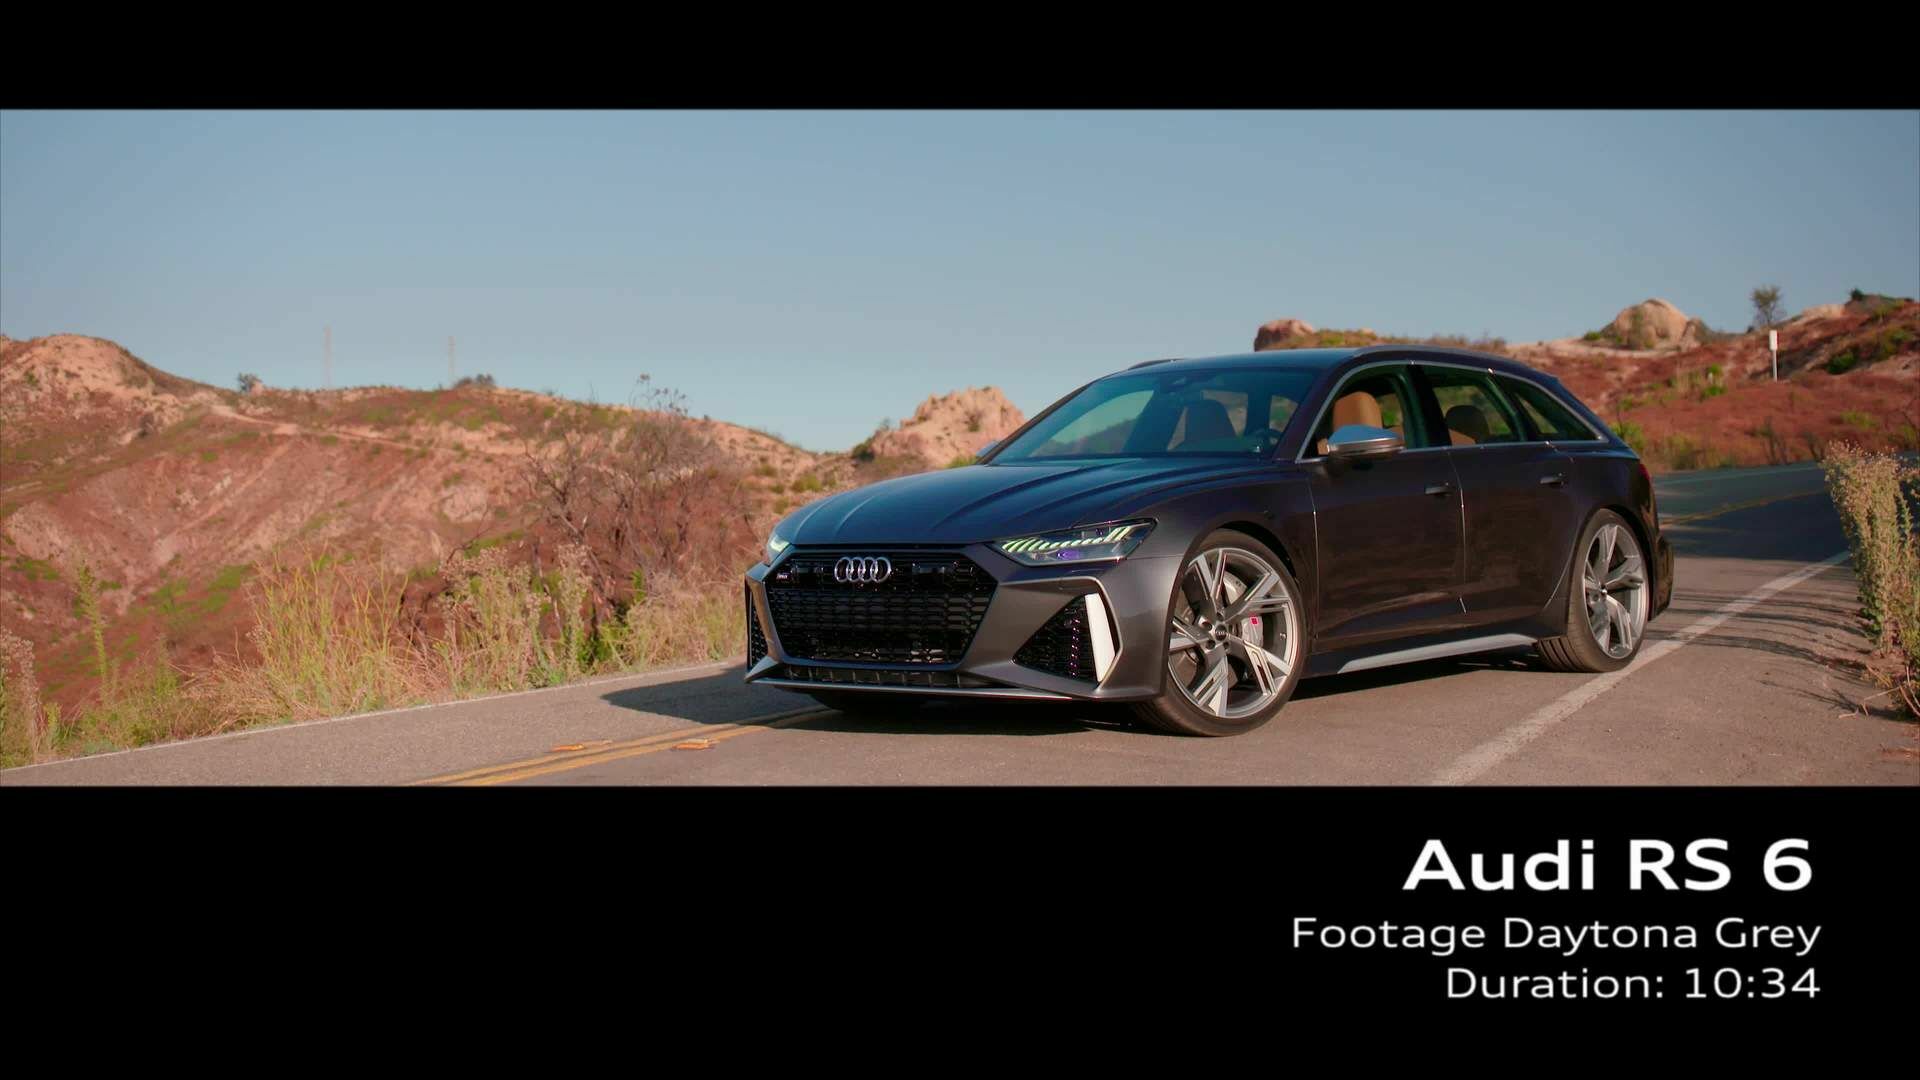 Audi RS 6 on location Daytonagrau (Footage)